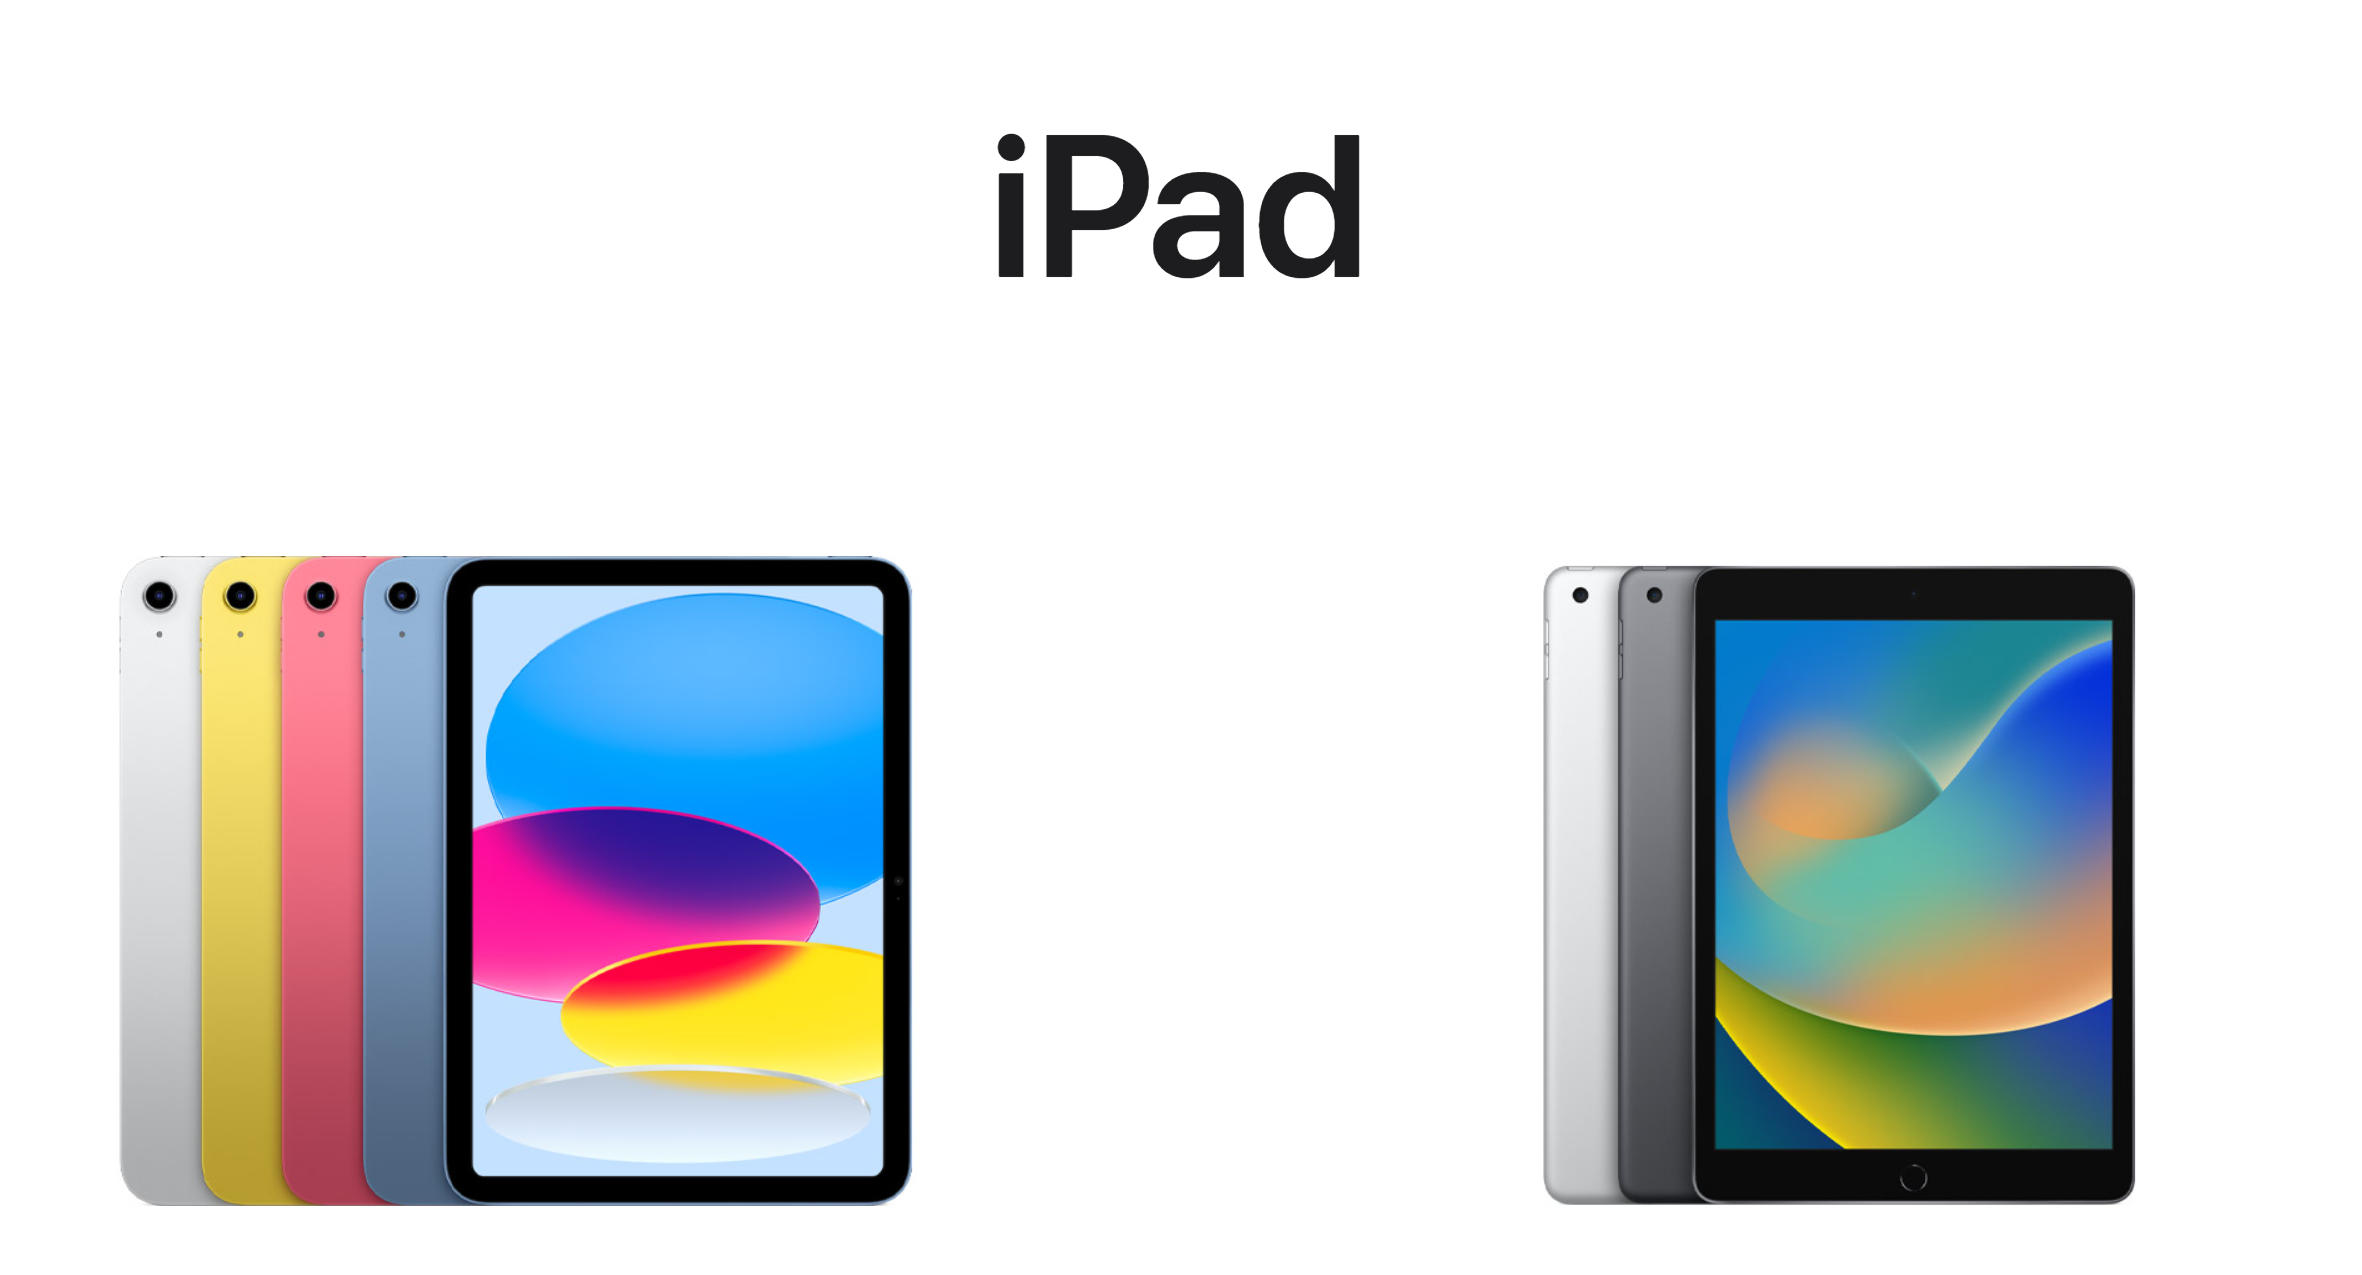 ipad屏幕比例都是4比3吗 系统知识 第1张